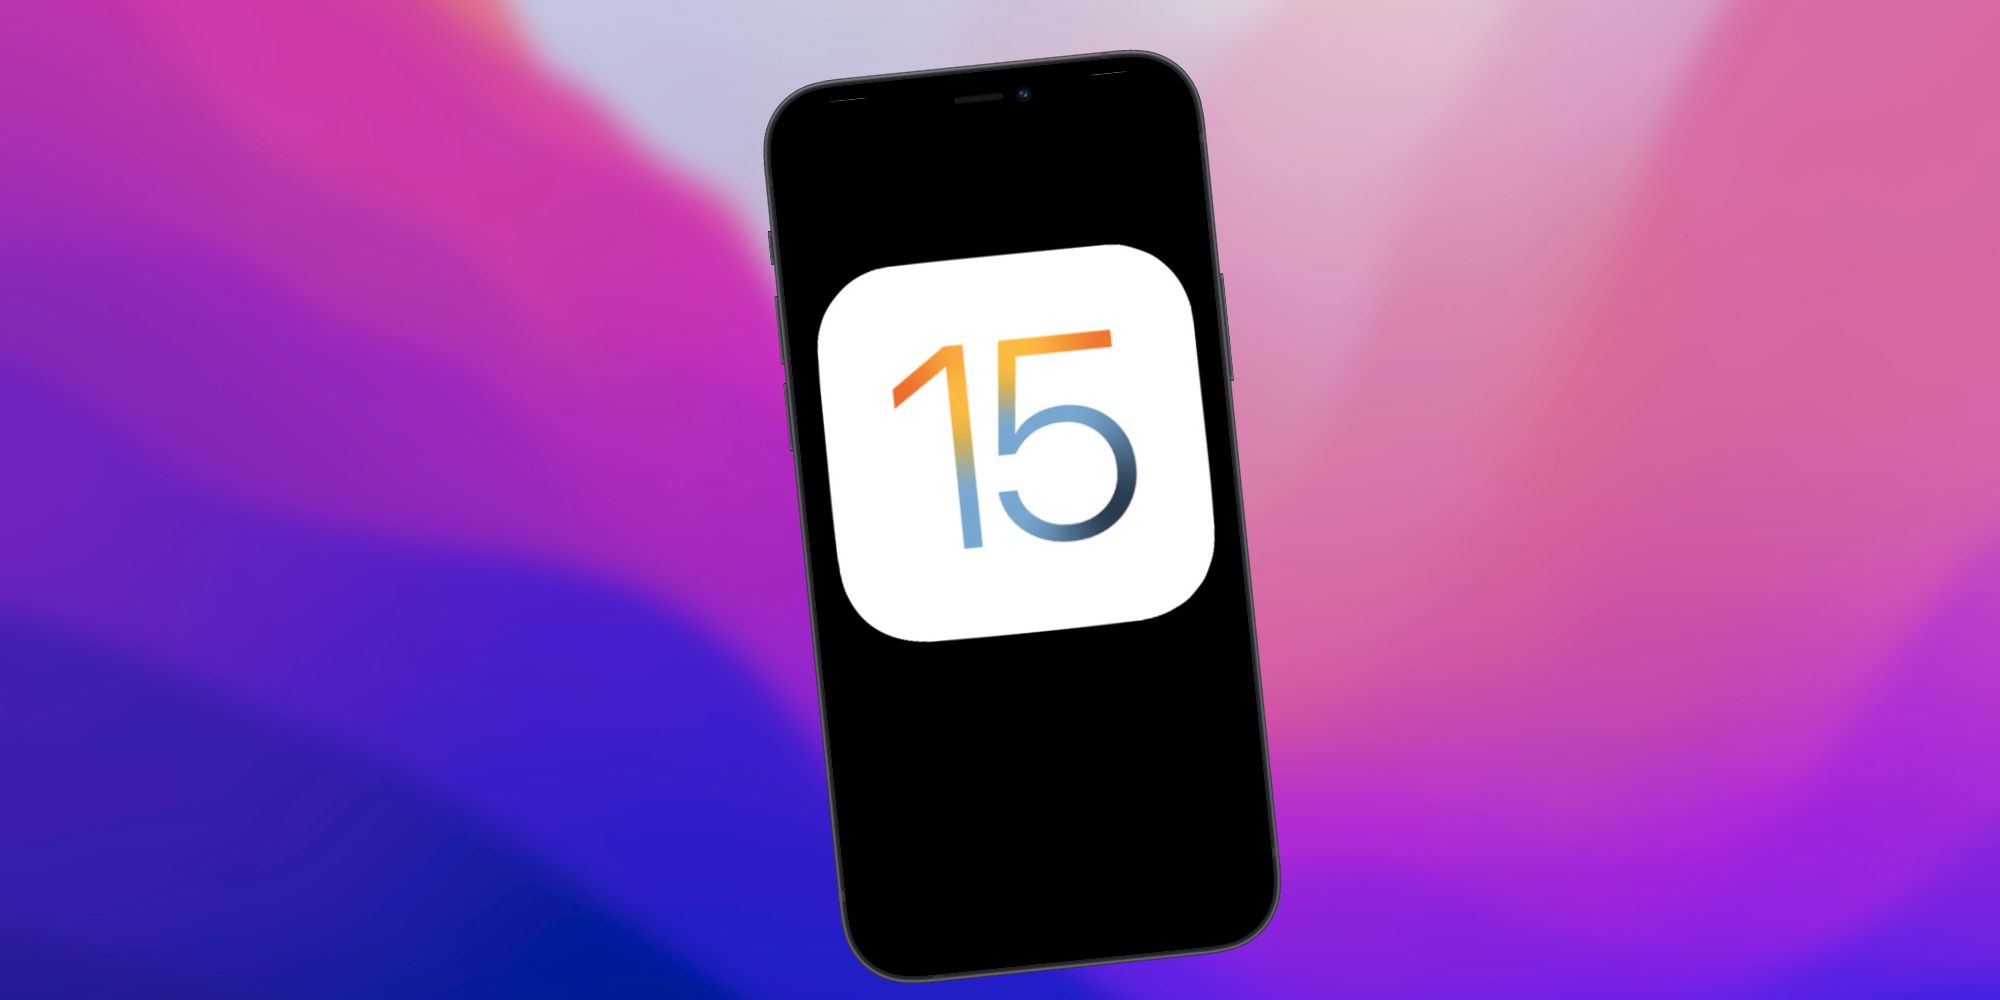 Загрузить бета-версию iOS 15 для разработчиков на iPhone